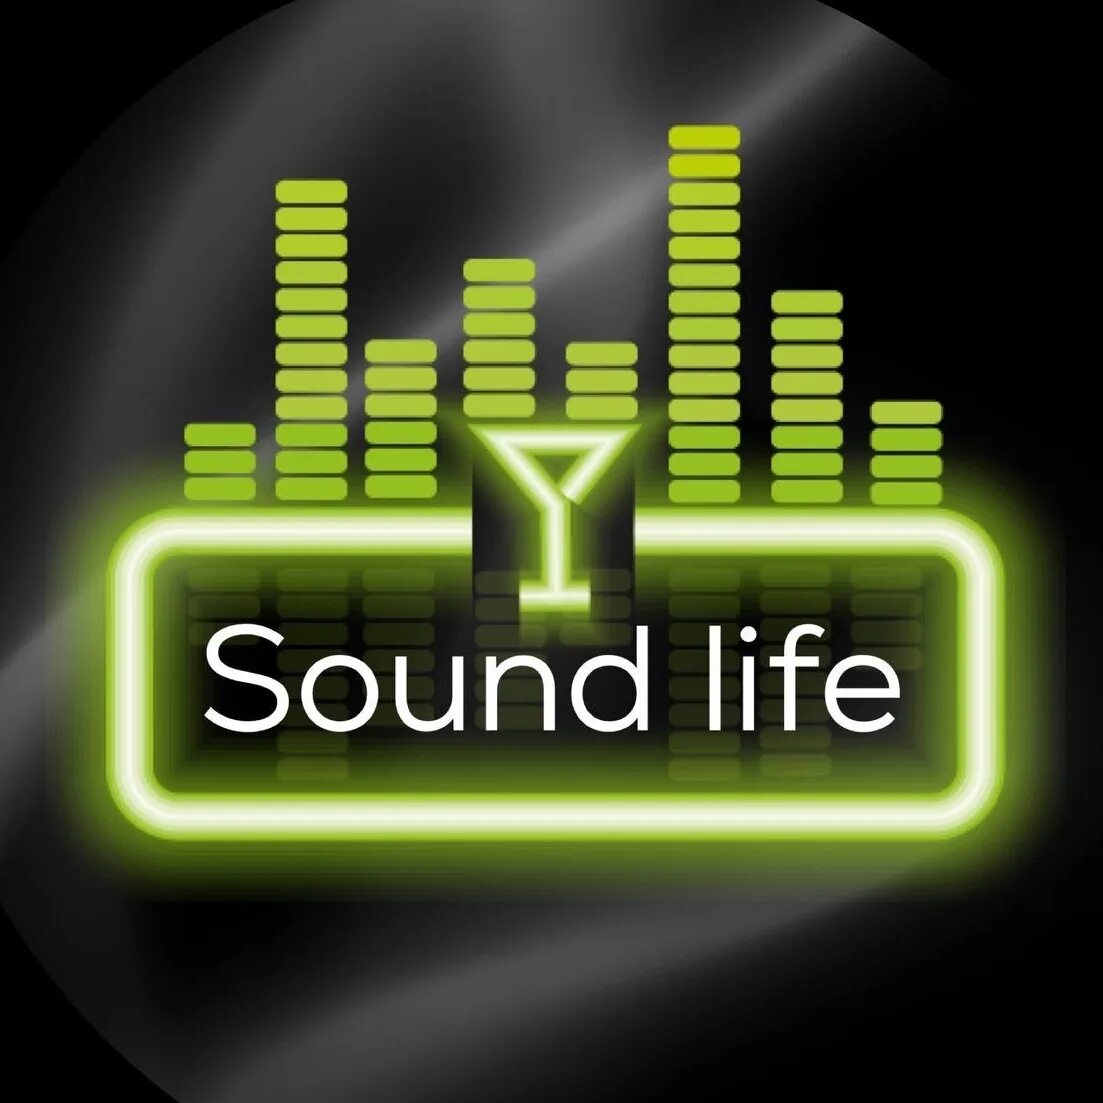 Life is sound. Sound Life Оренбург. Life звук. Лайф саунд Кемерово. Прокопьевск Life Sound.